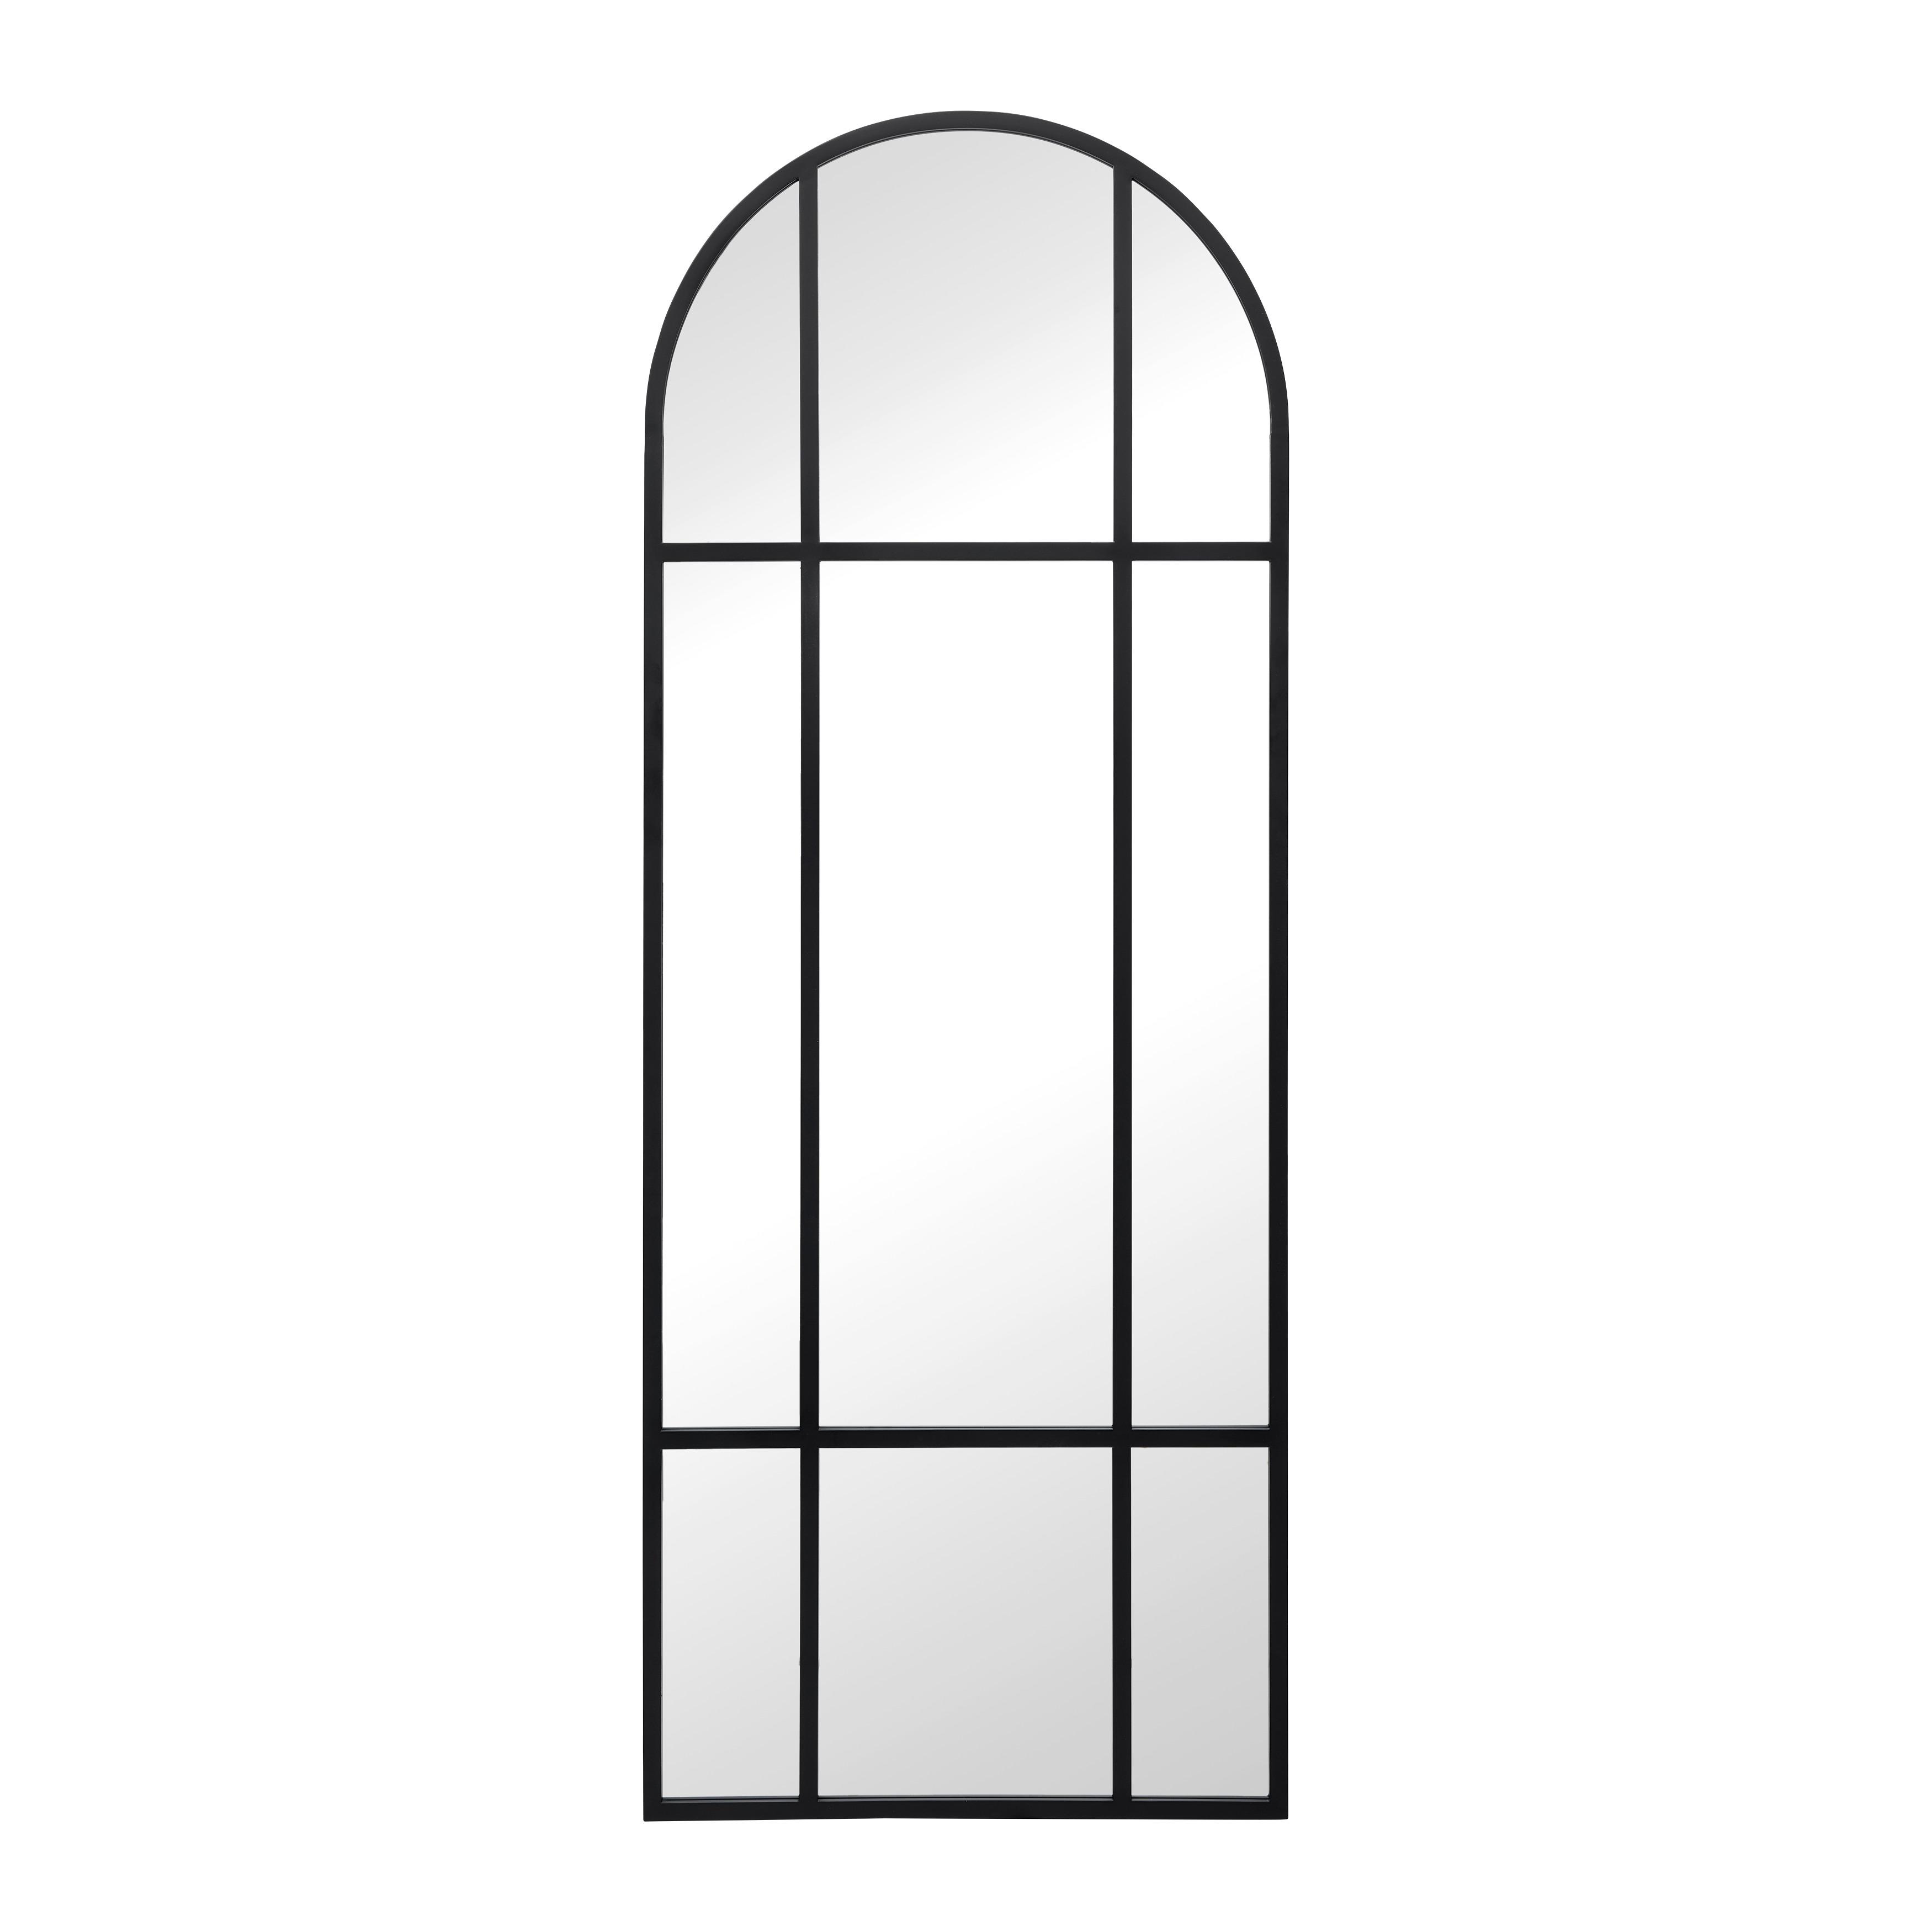 SPIEGEL "Madon", schwarz - Schwarz, MODERN, Glas/Metall (70/185/3cm) - Bessagi Home